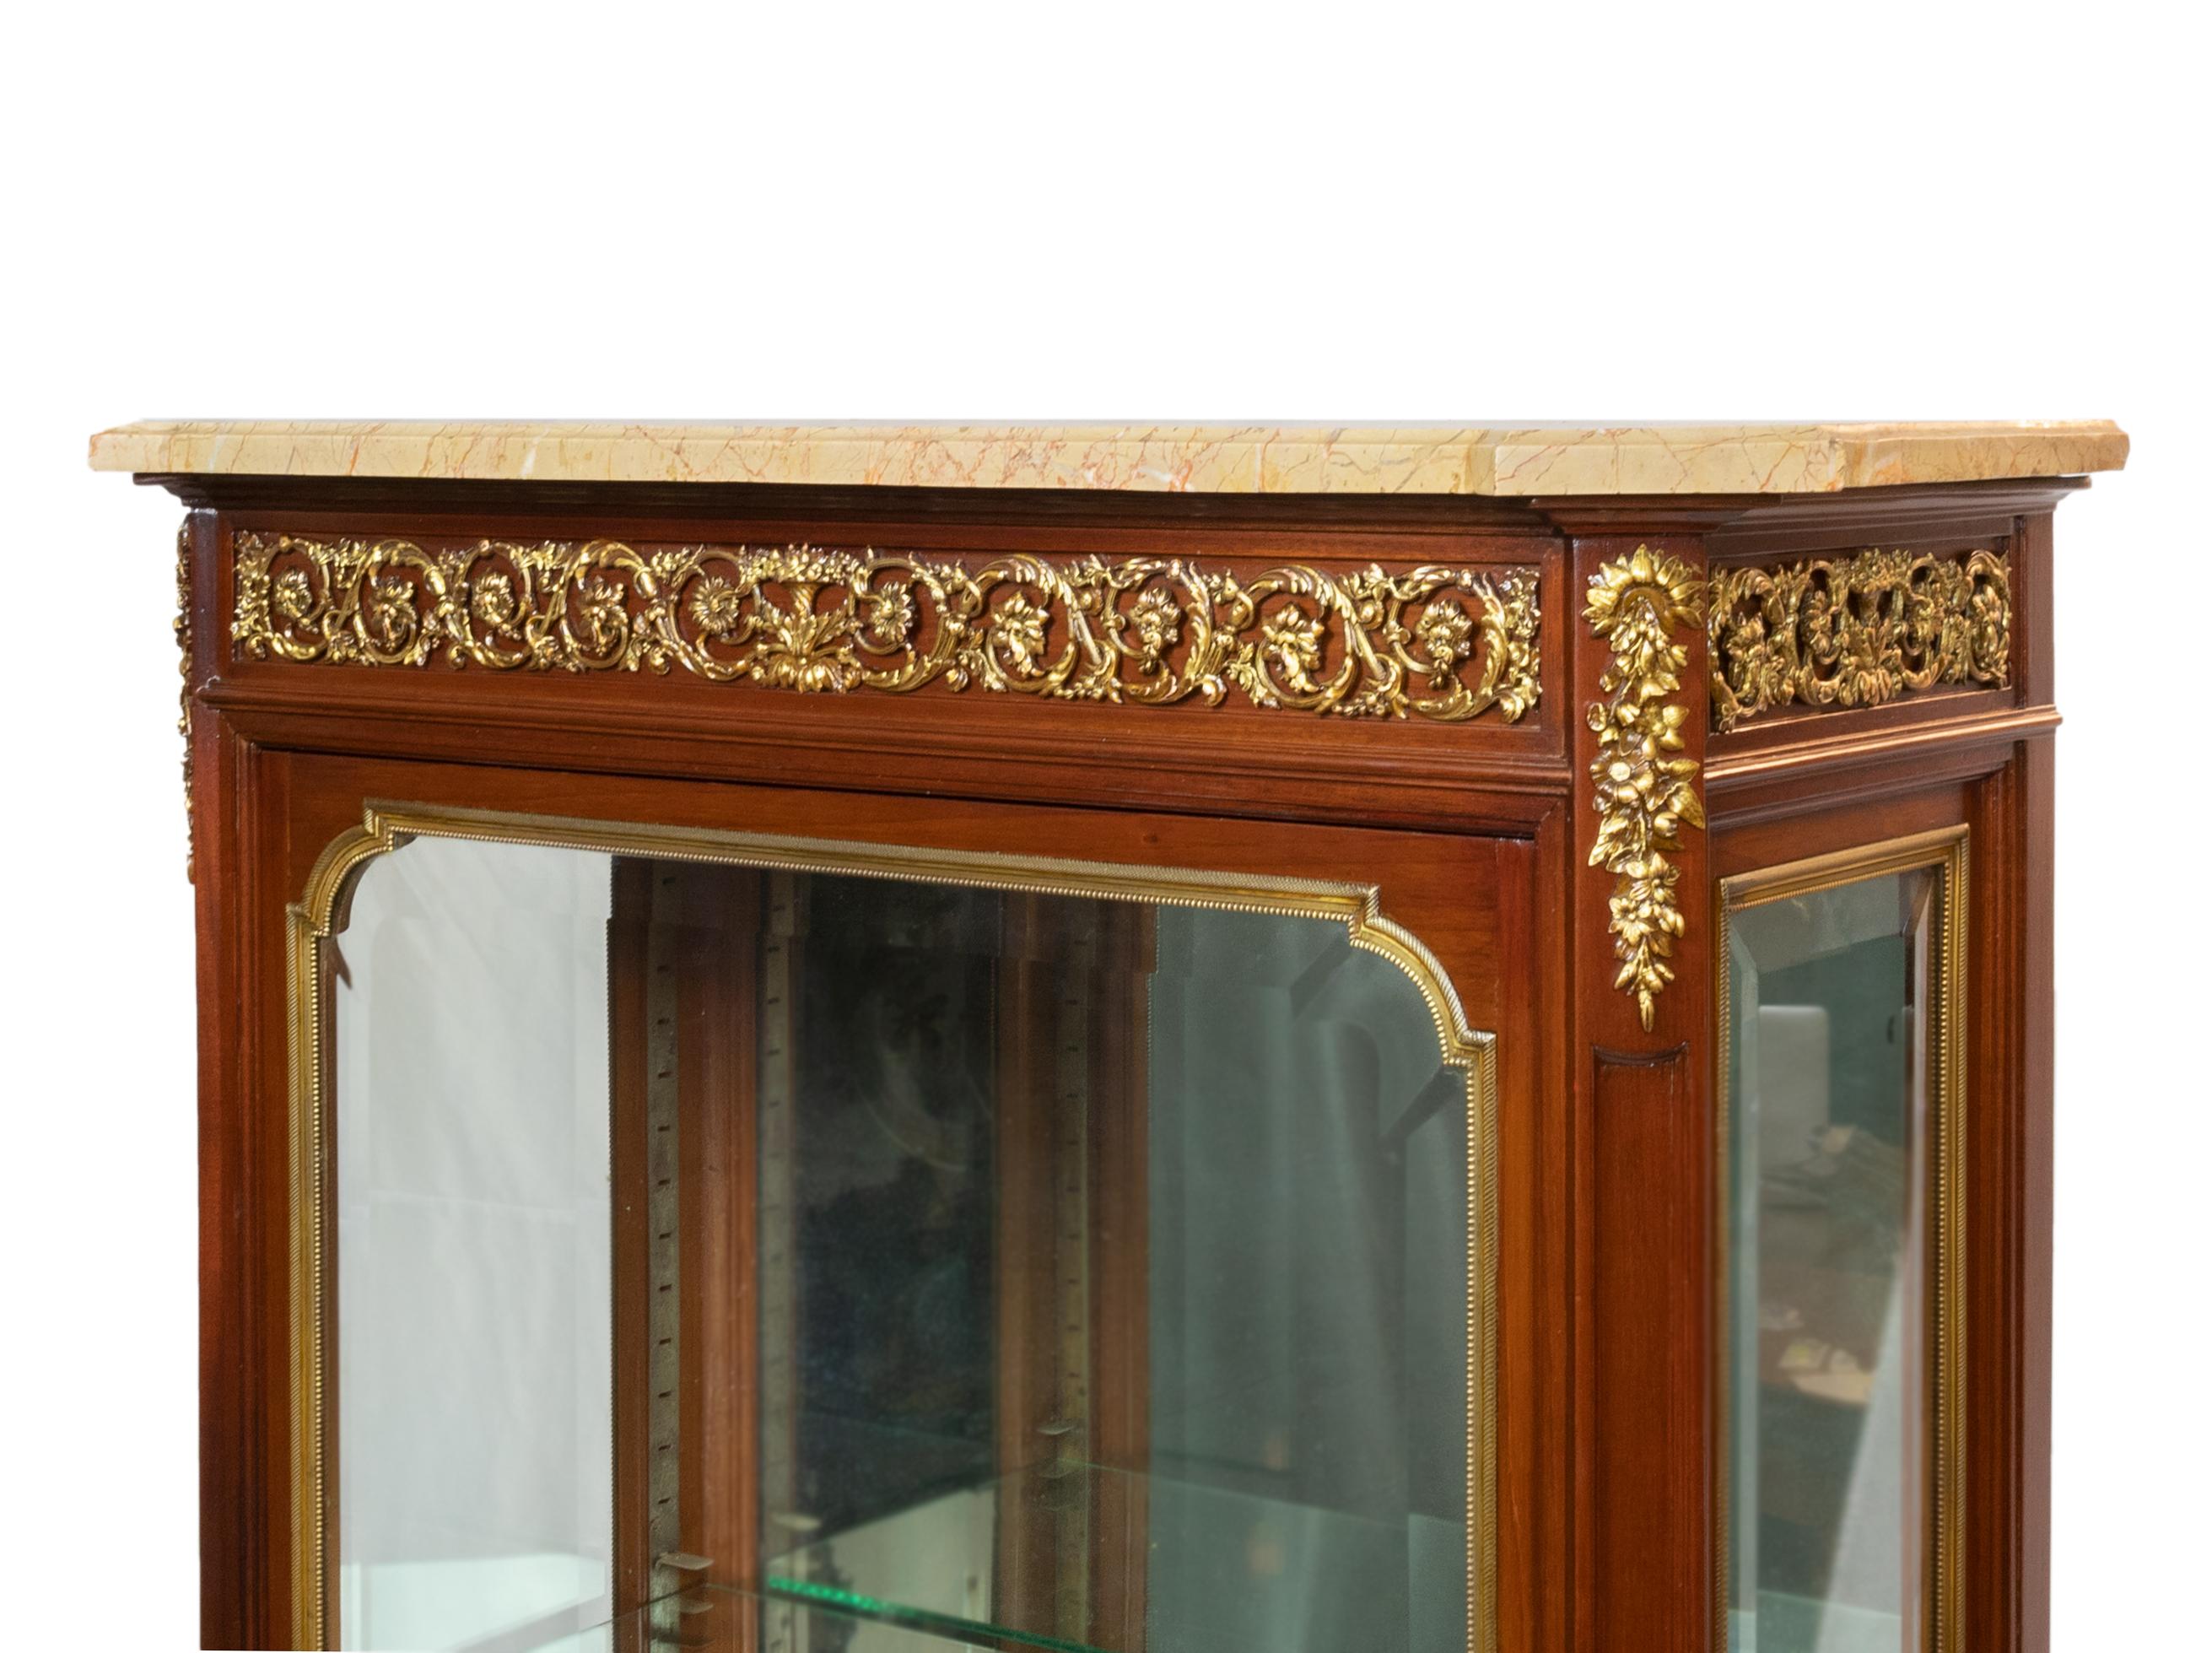 Eine einzigartige Vitrine im Stil Napoleons III. für Bijouterie und Juwelen. Die Innenausstattung besteht aus einem Glasboden, durchsichtigen Glasböden, einem Gesims, Kuba-Mahagoni, Intarsien, geprägter vergoldeter Bronze und einer Marmorplatte.